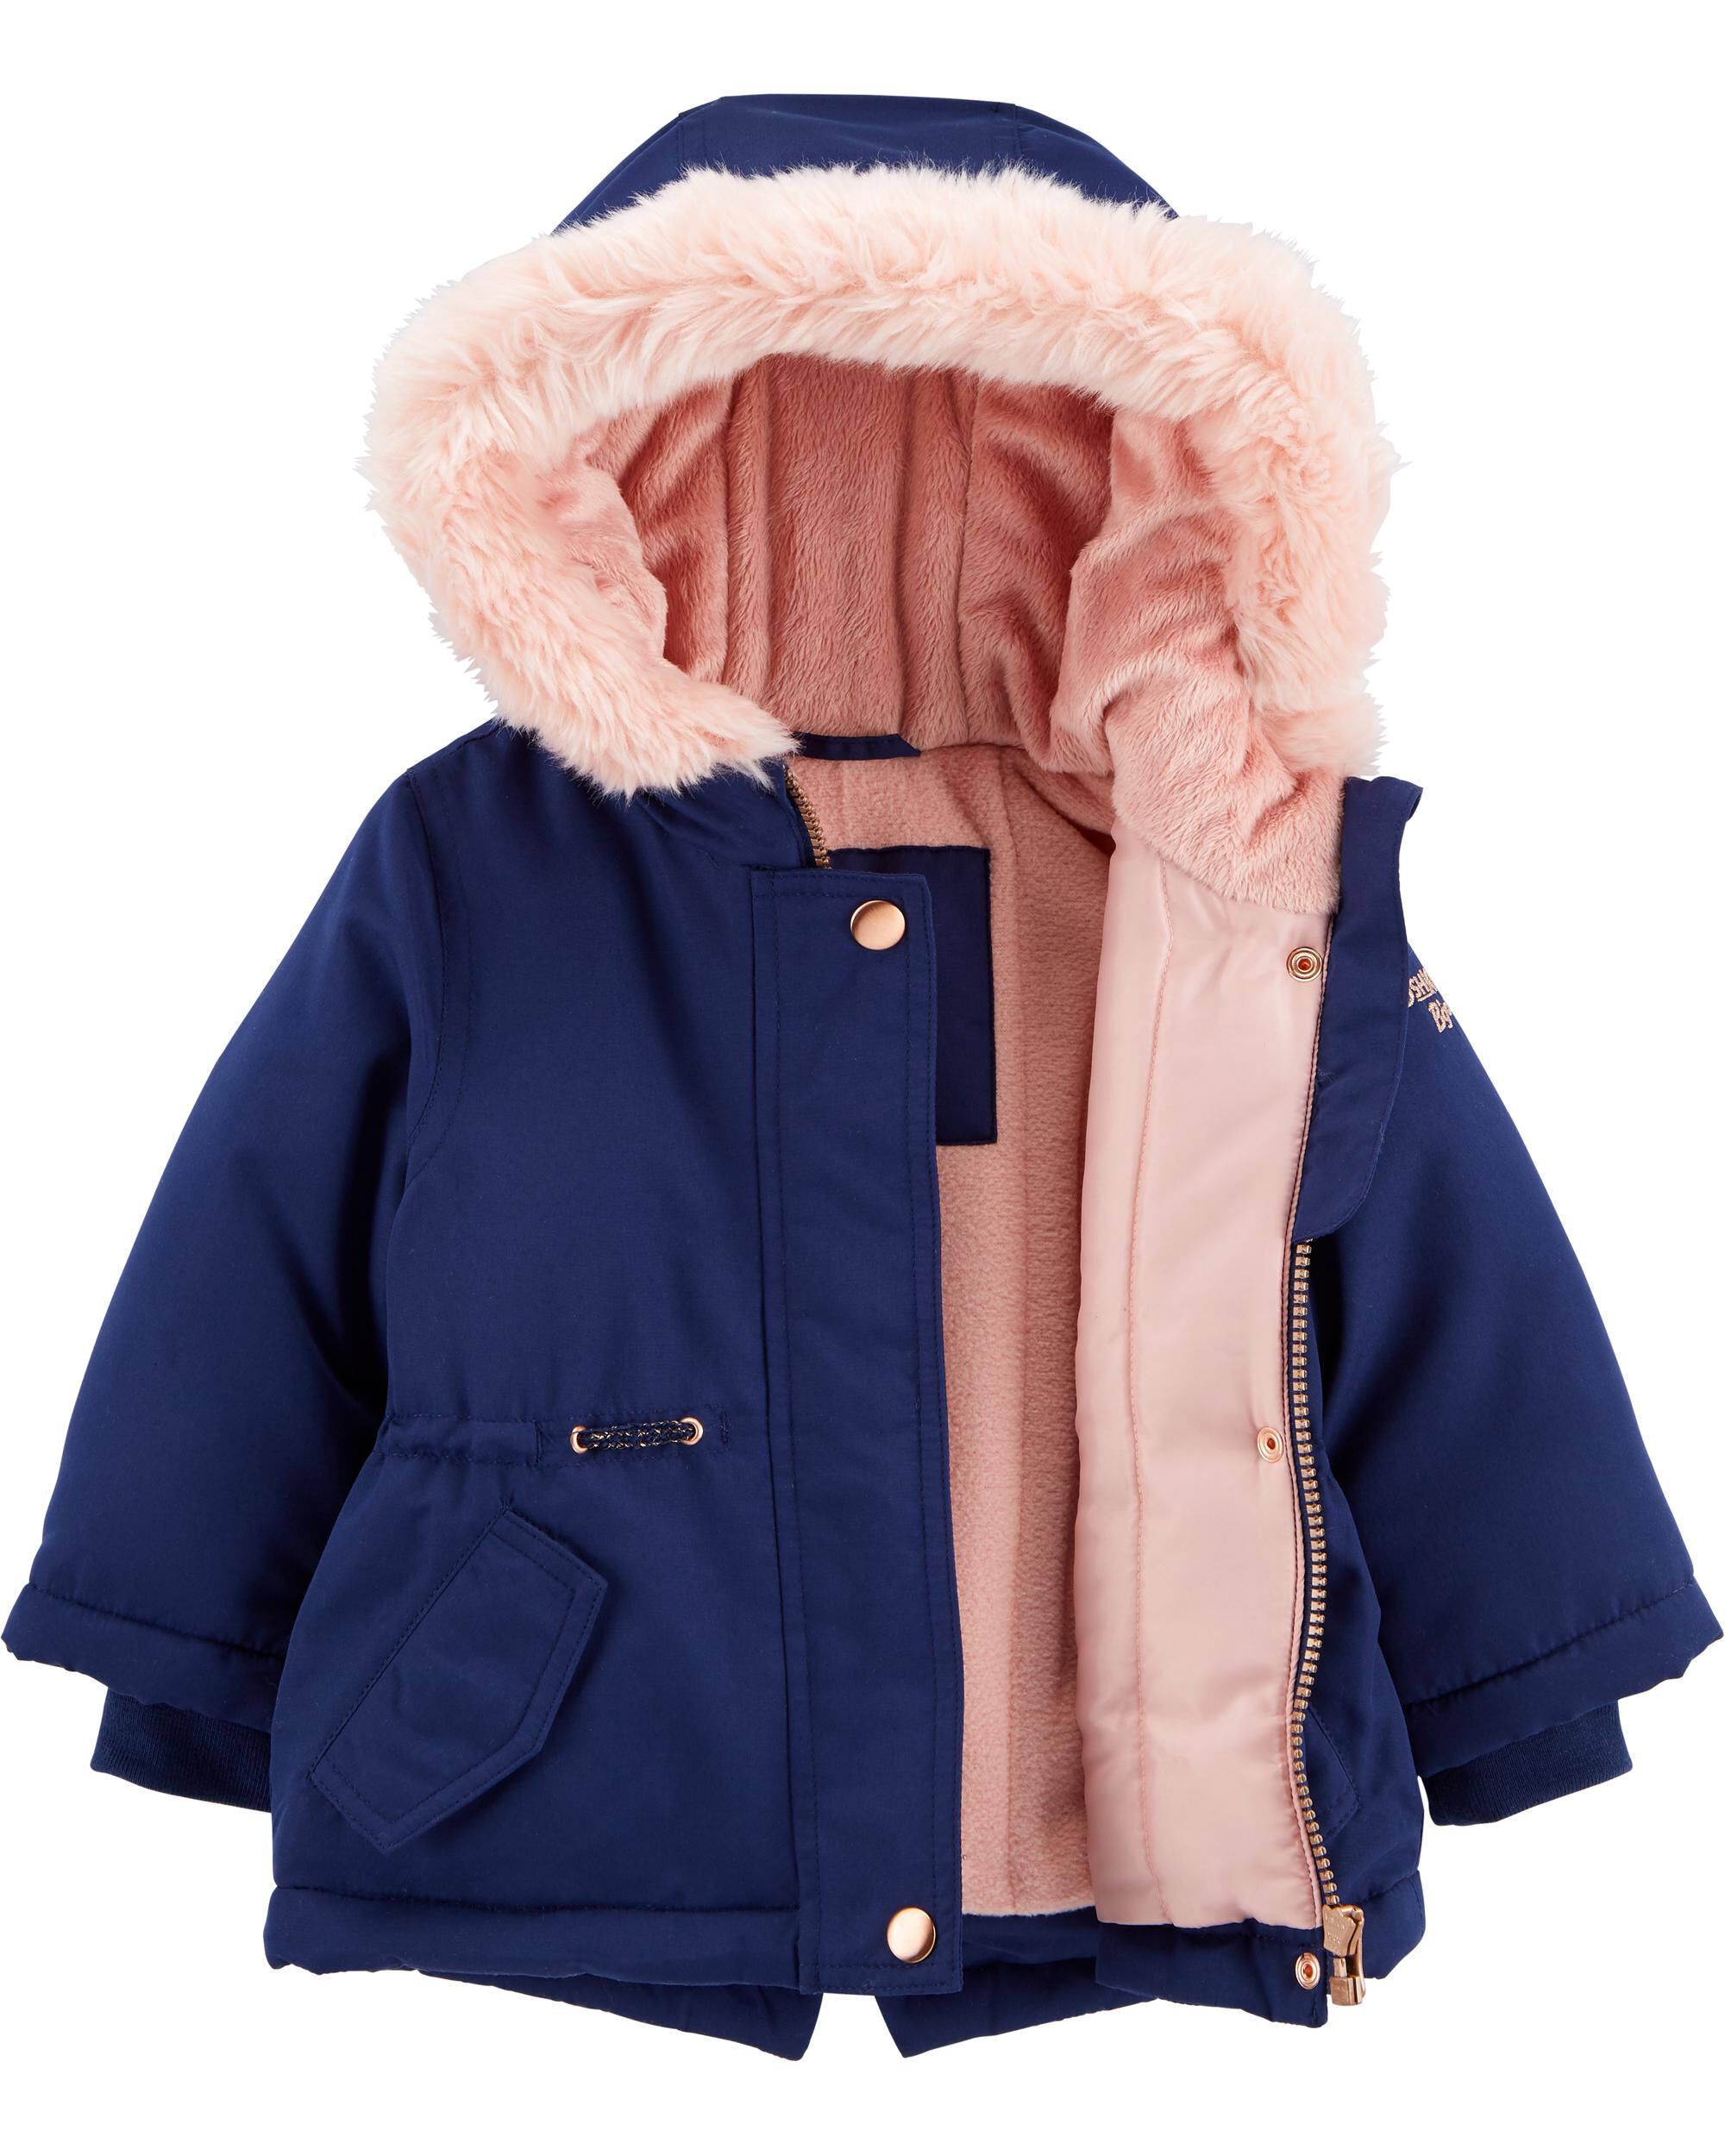 carters baby girl winter coats